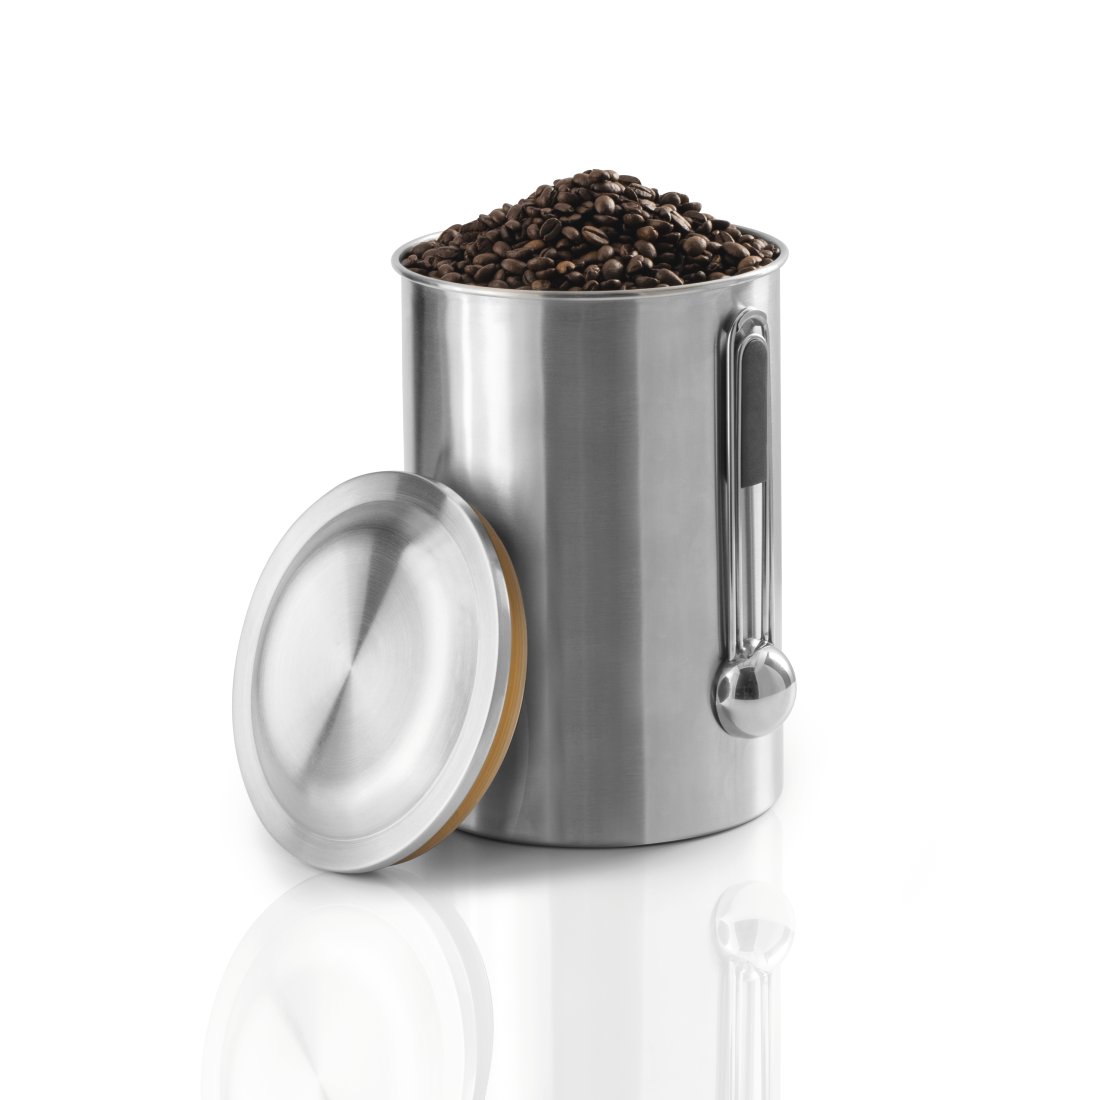 abx2 High-Res Image 2 - Xavax, Boîte en acier inox. pr 1 kg de grains de café, avec cuillère, argent.